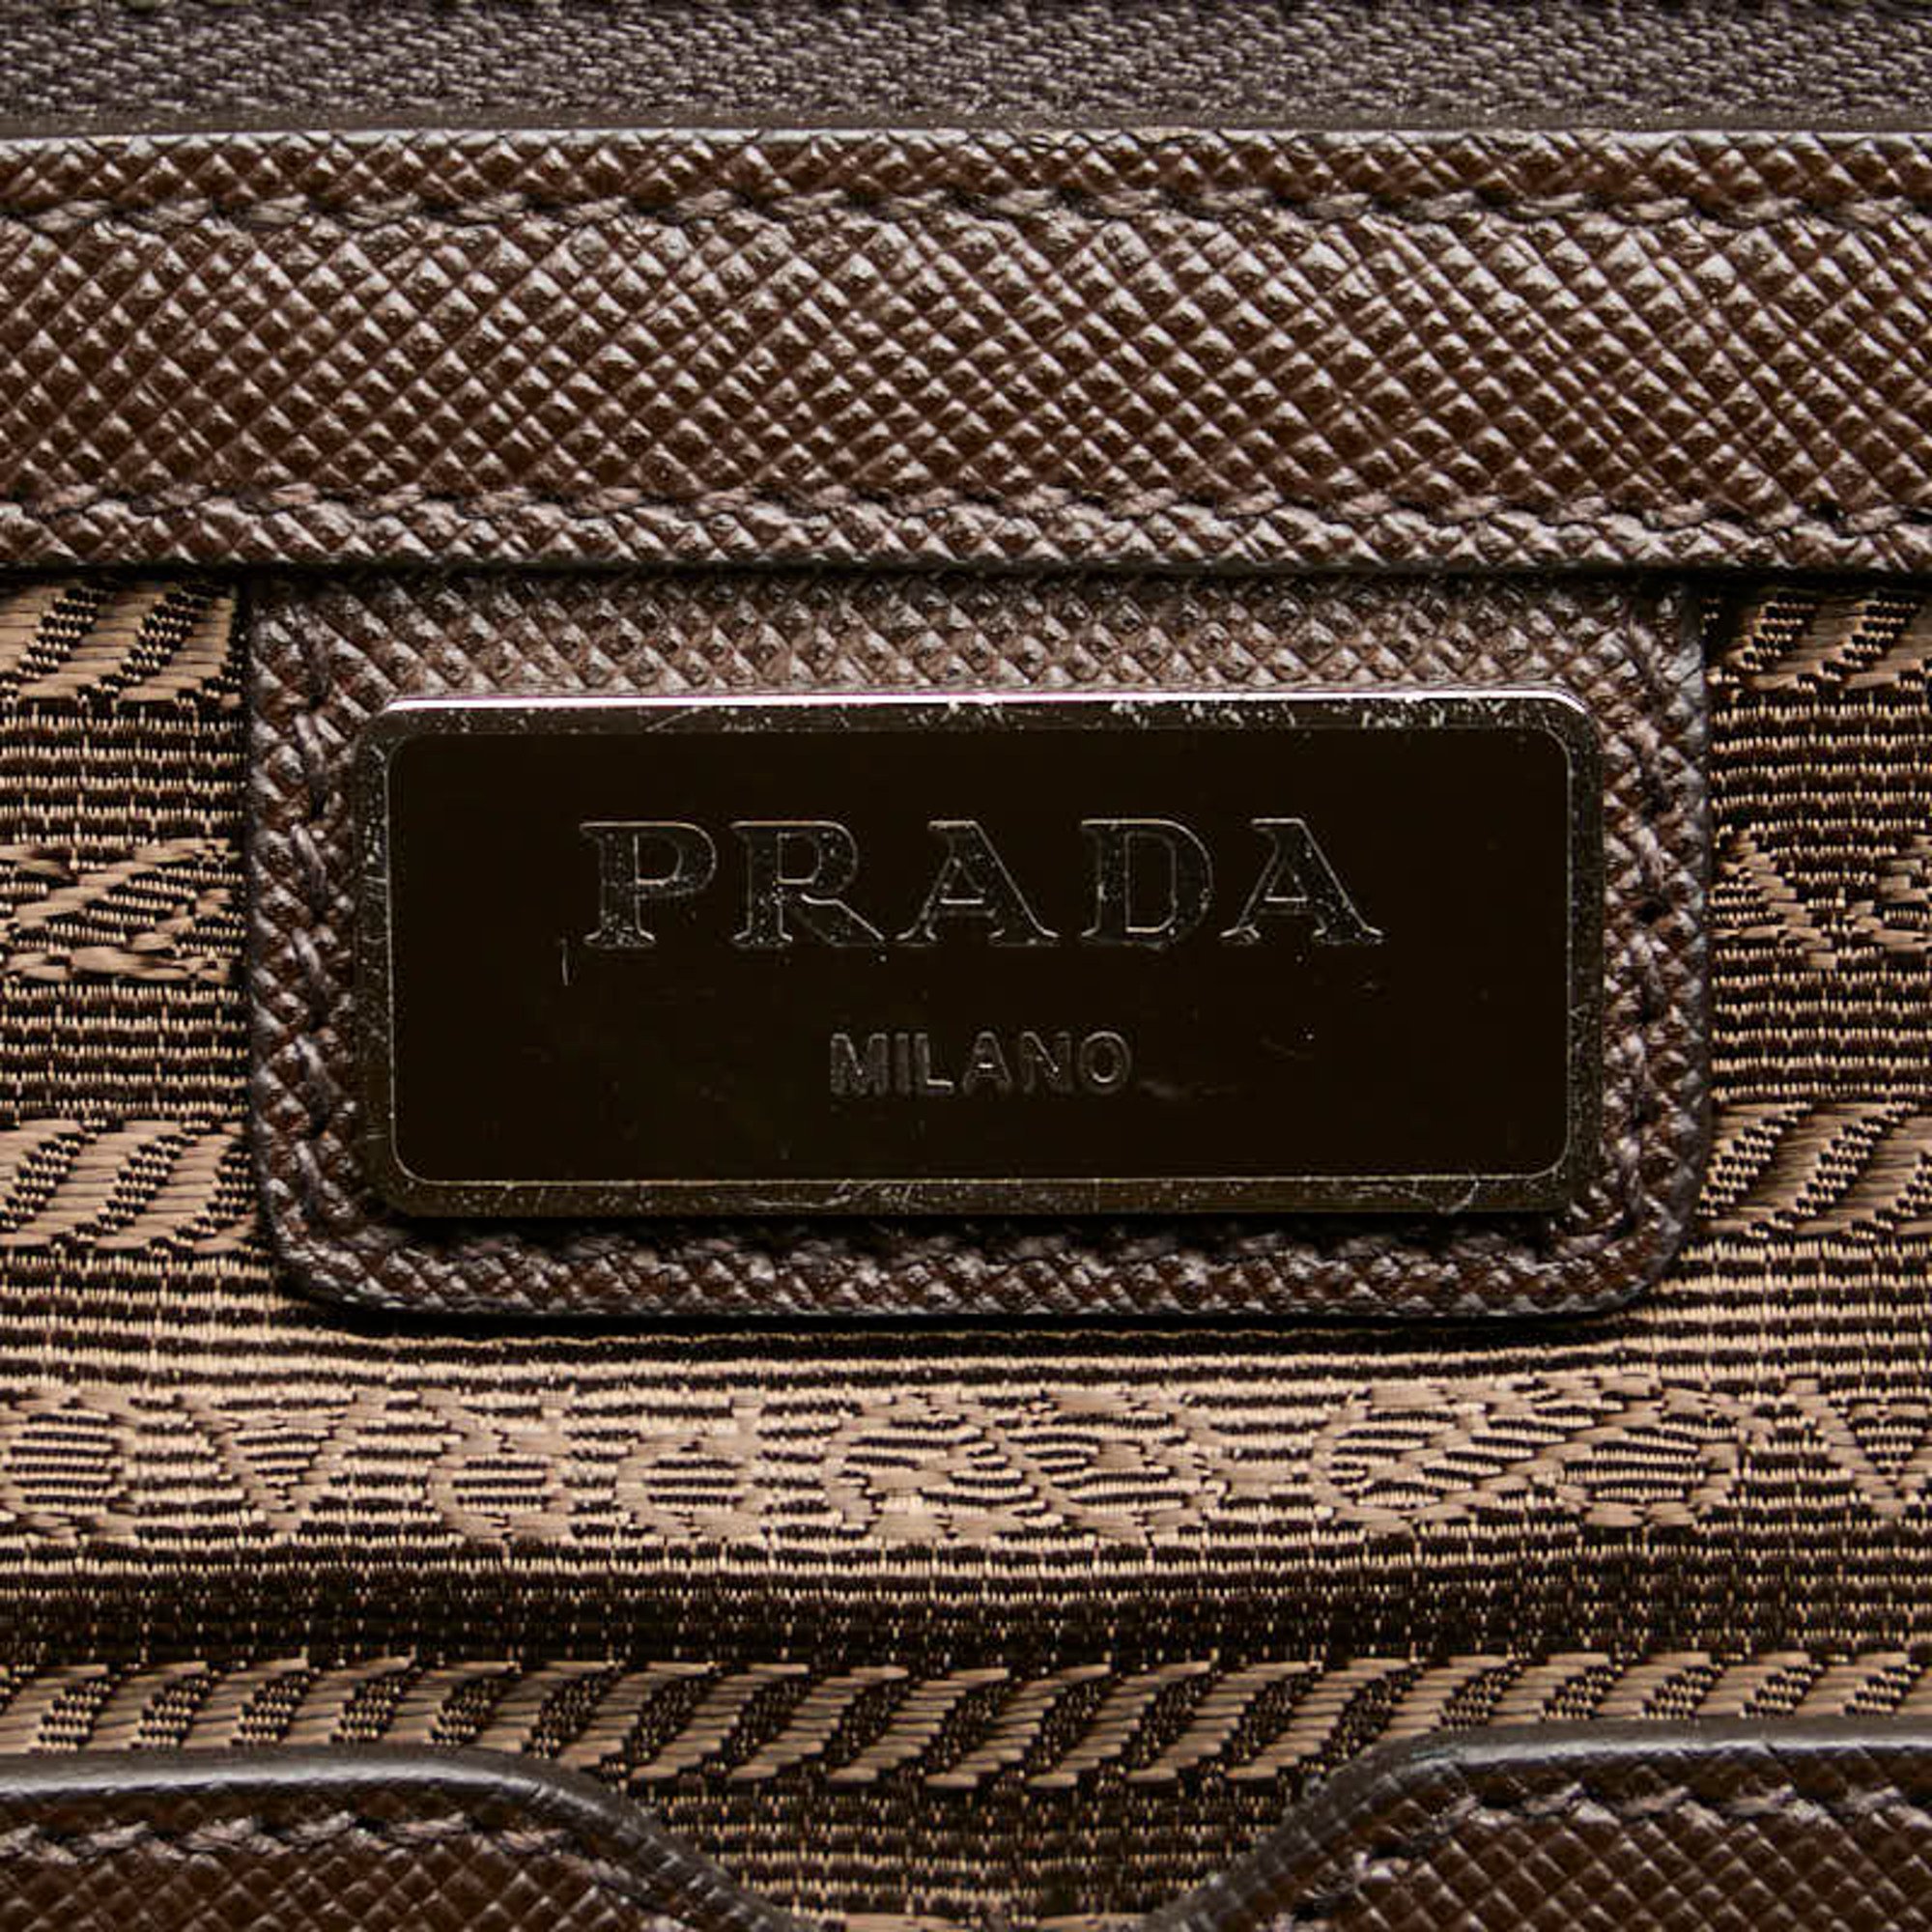 Prada Triangle Plate Handbag Shoulder Bag 2VE368 White Silver Leather Women's PRADA